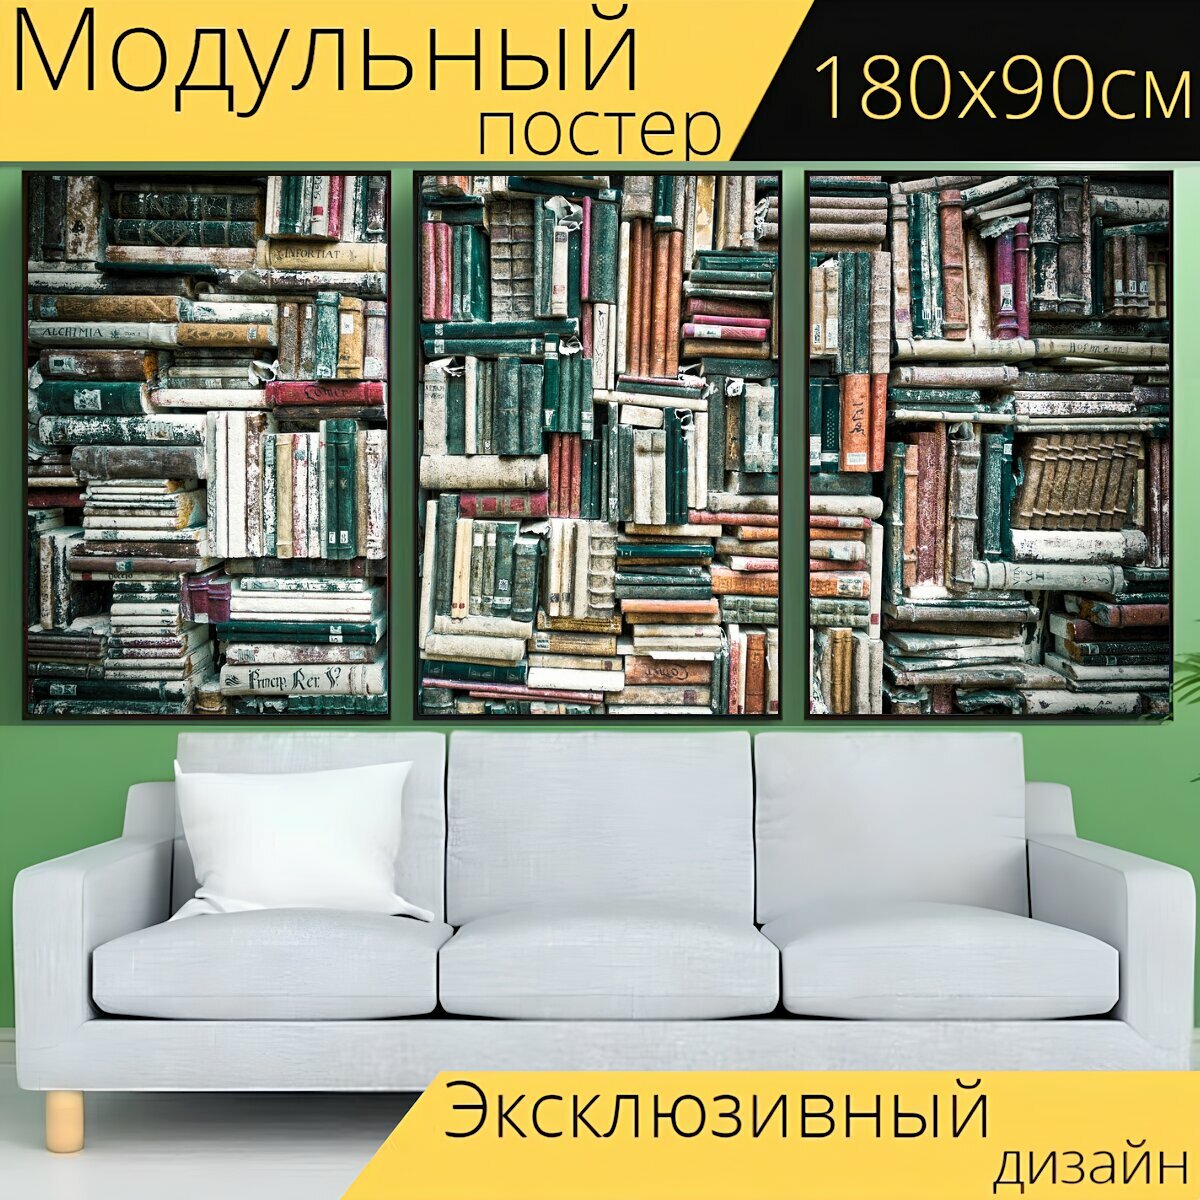 Модульный постер "Книги, чтение, скульптура" 180 x 90 см. для интерьера